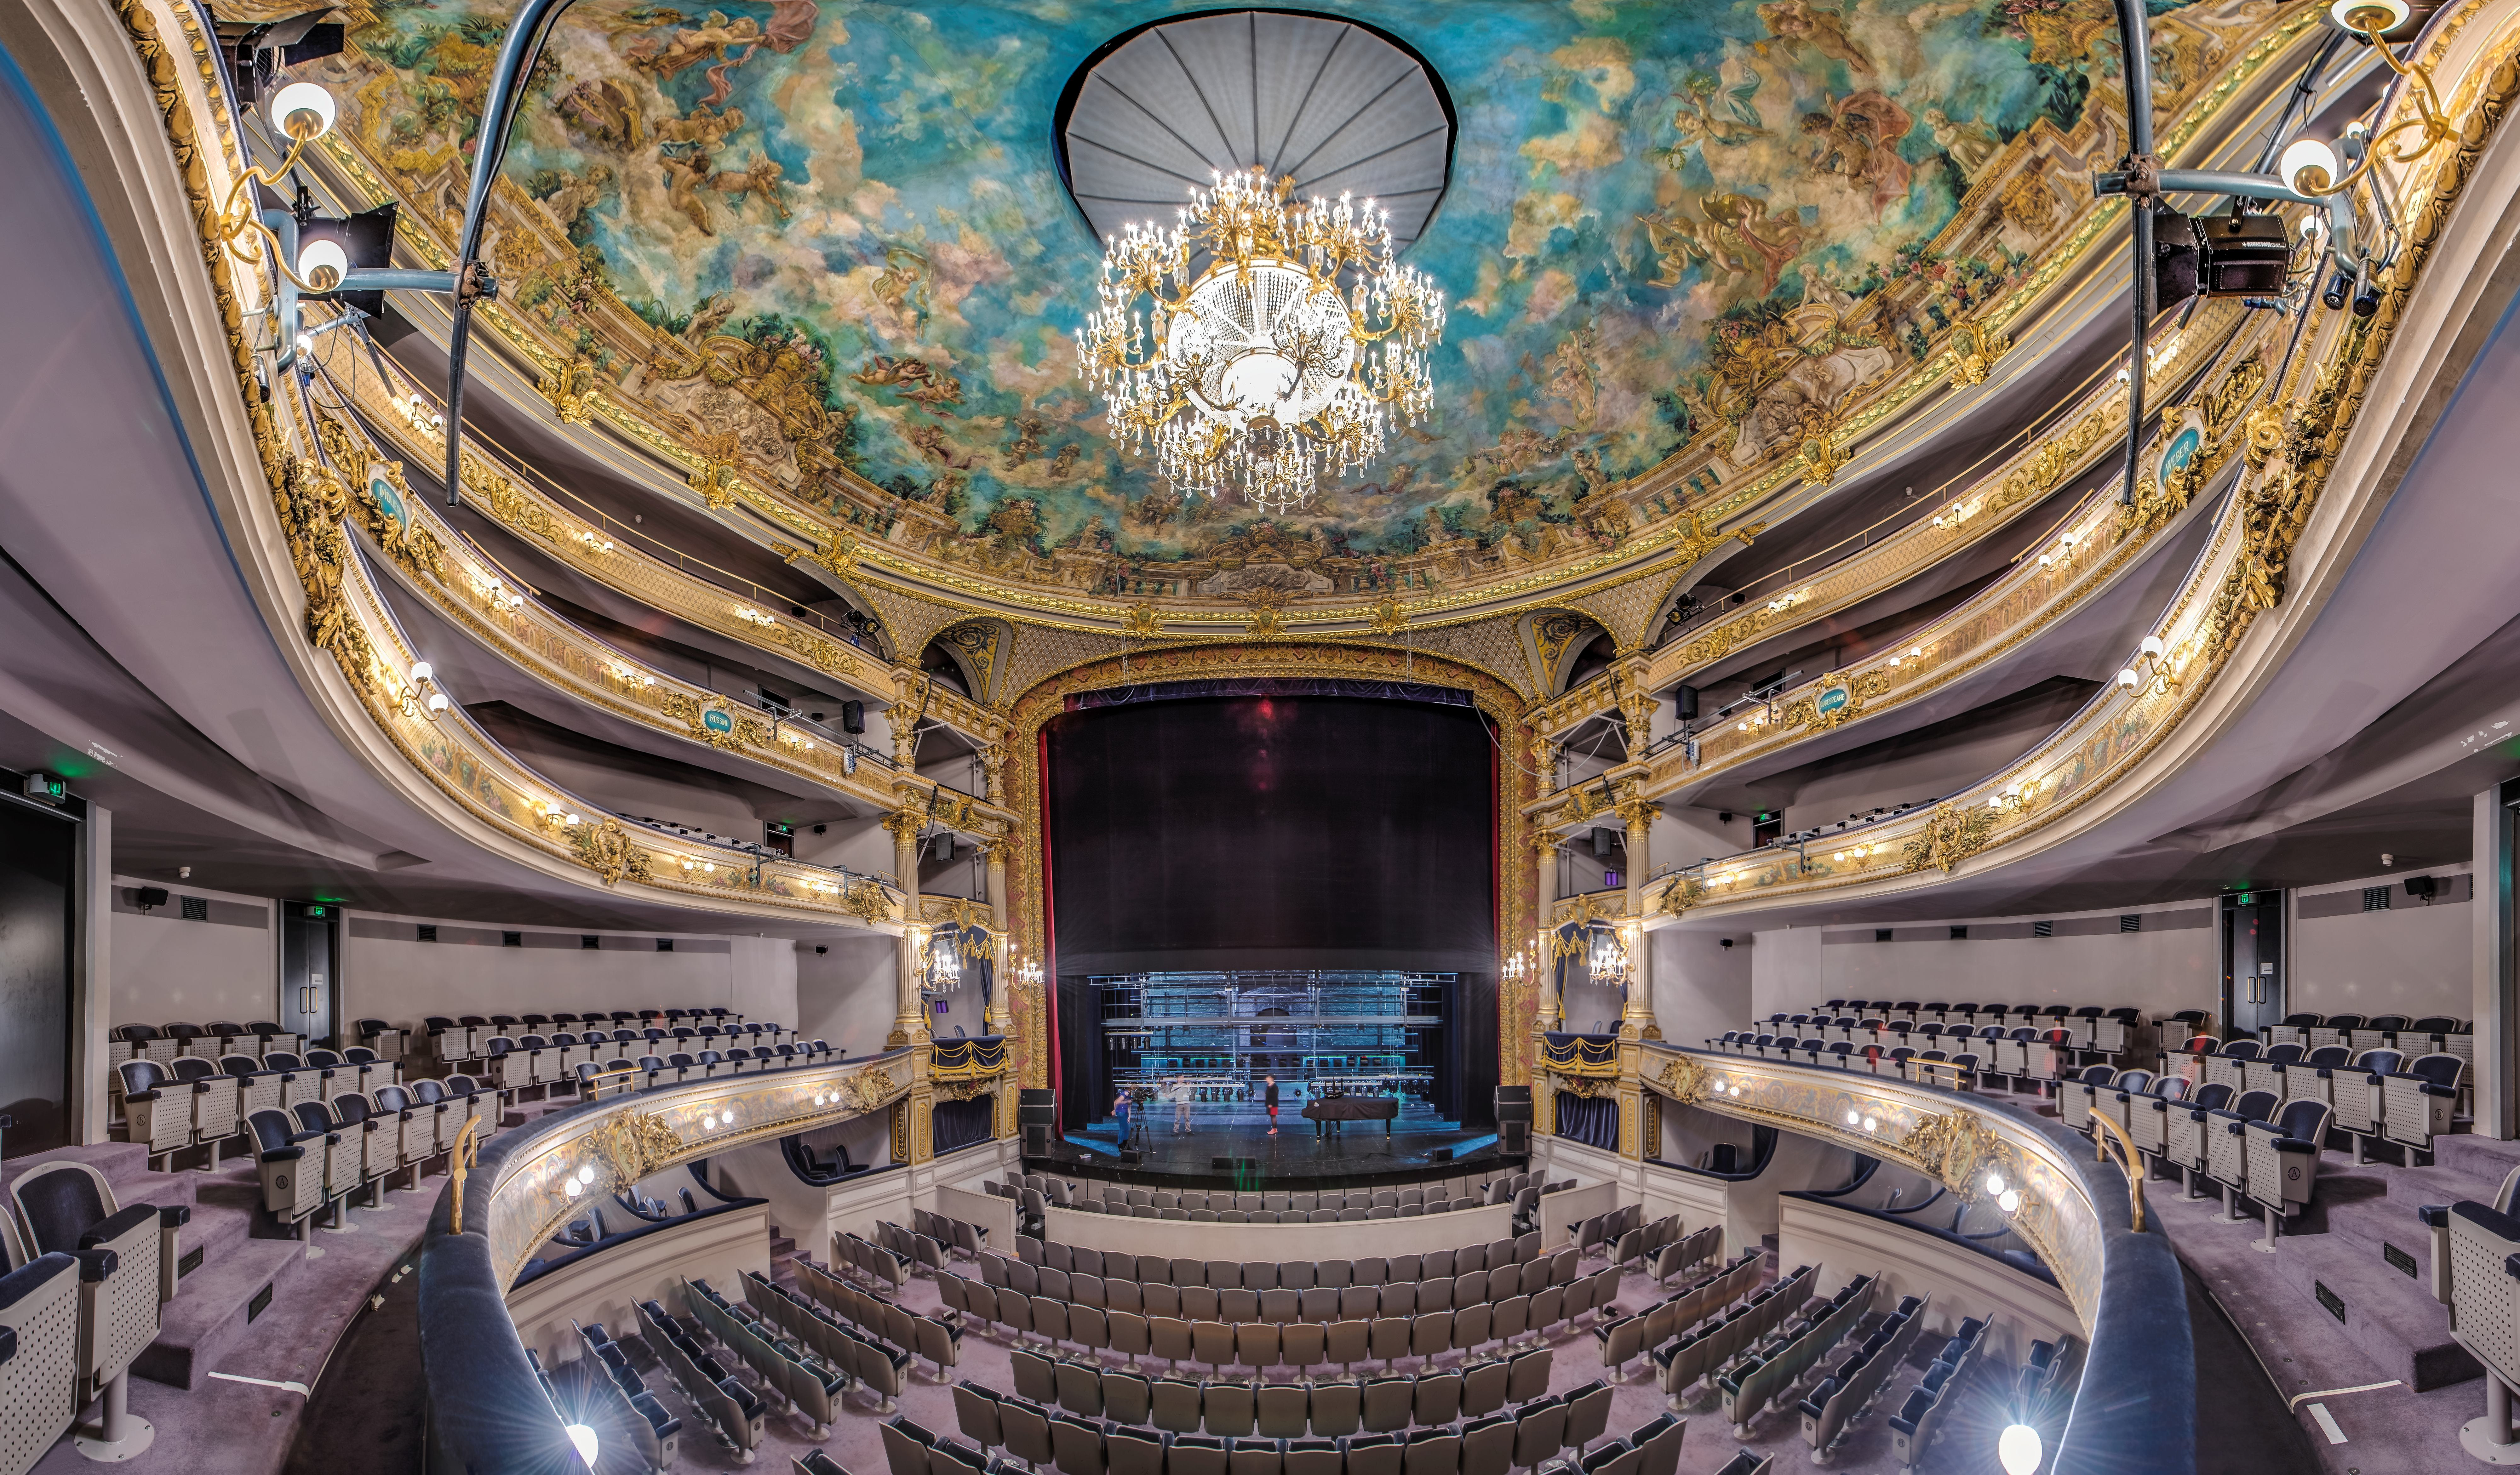 Assistez à de nombreux spectacles et concerts au Théâtre Royal de Namur, un superbe bâtiment datant du XIX